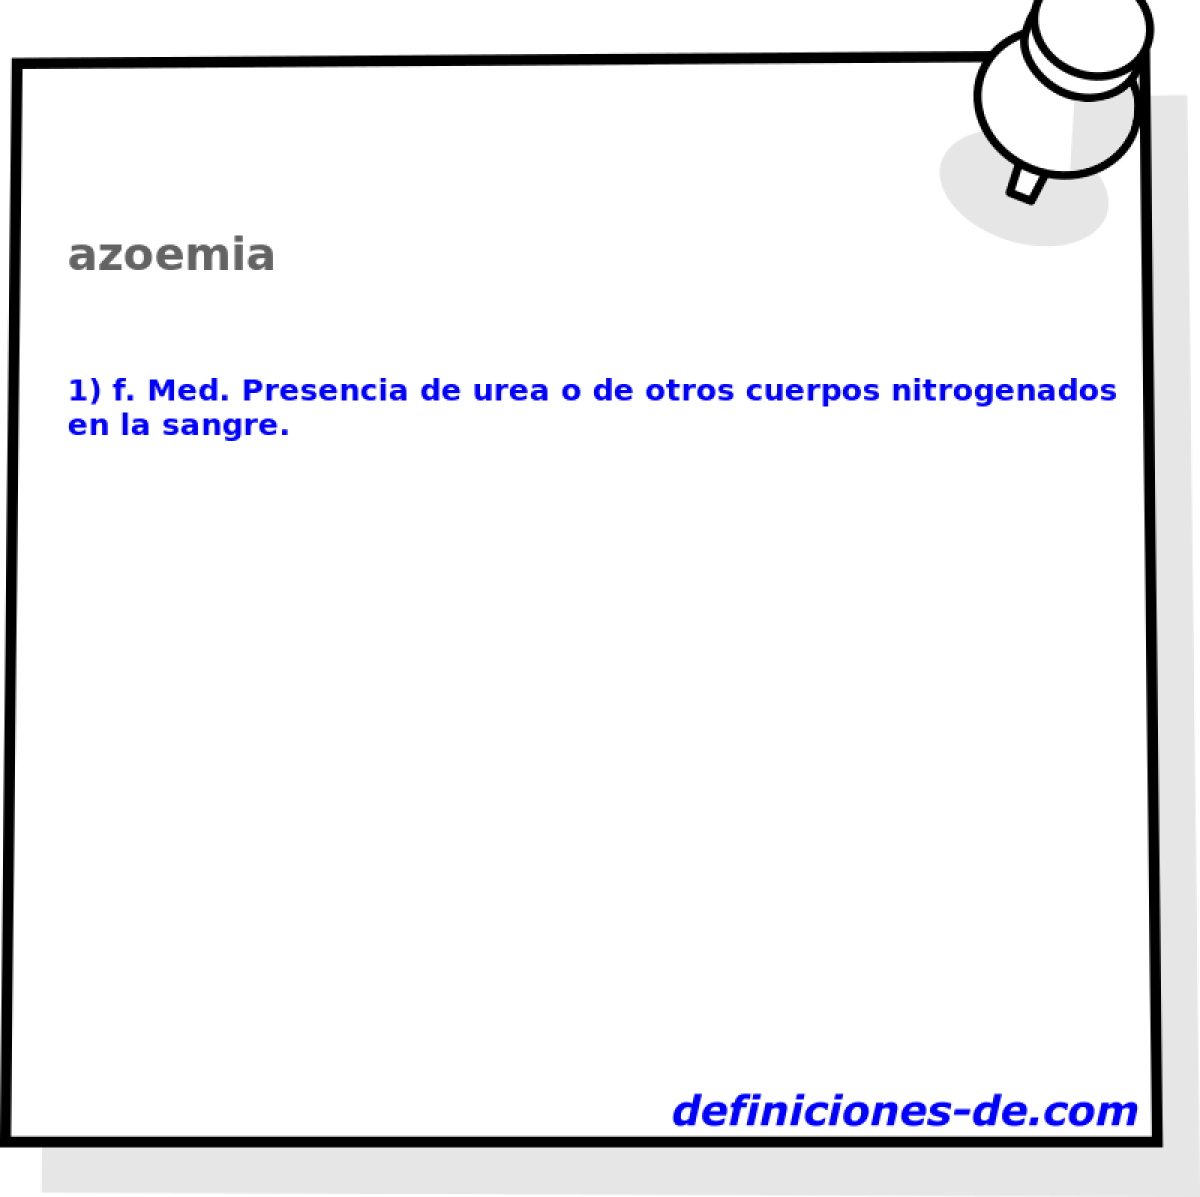 azoemia 